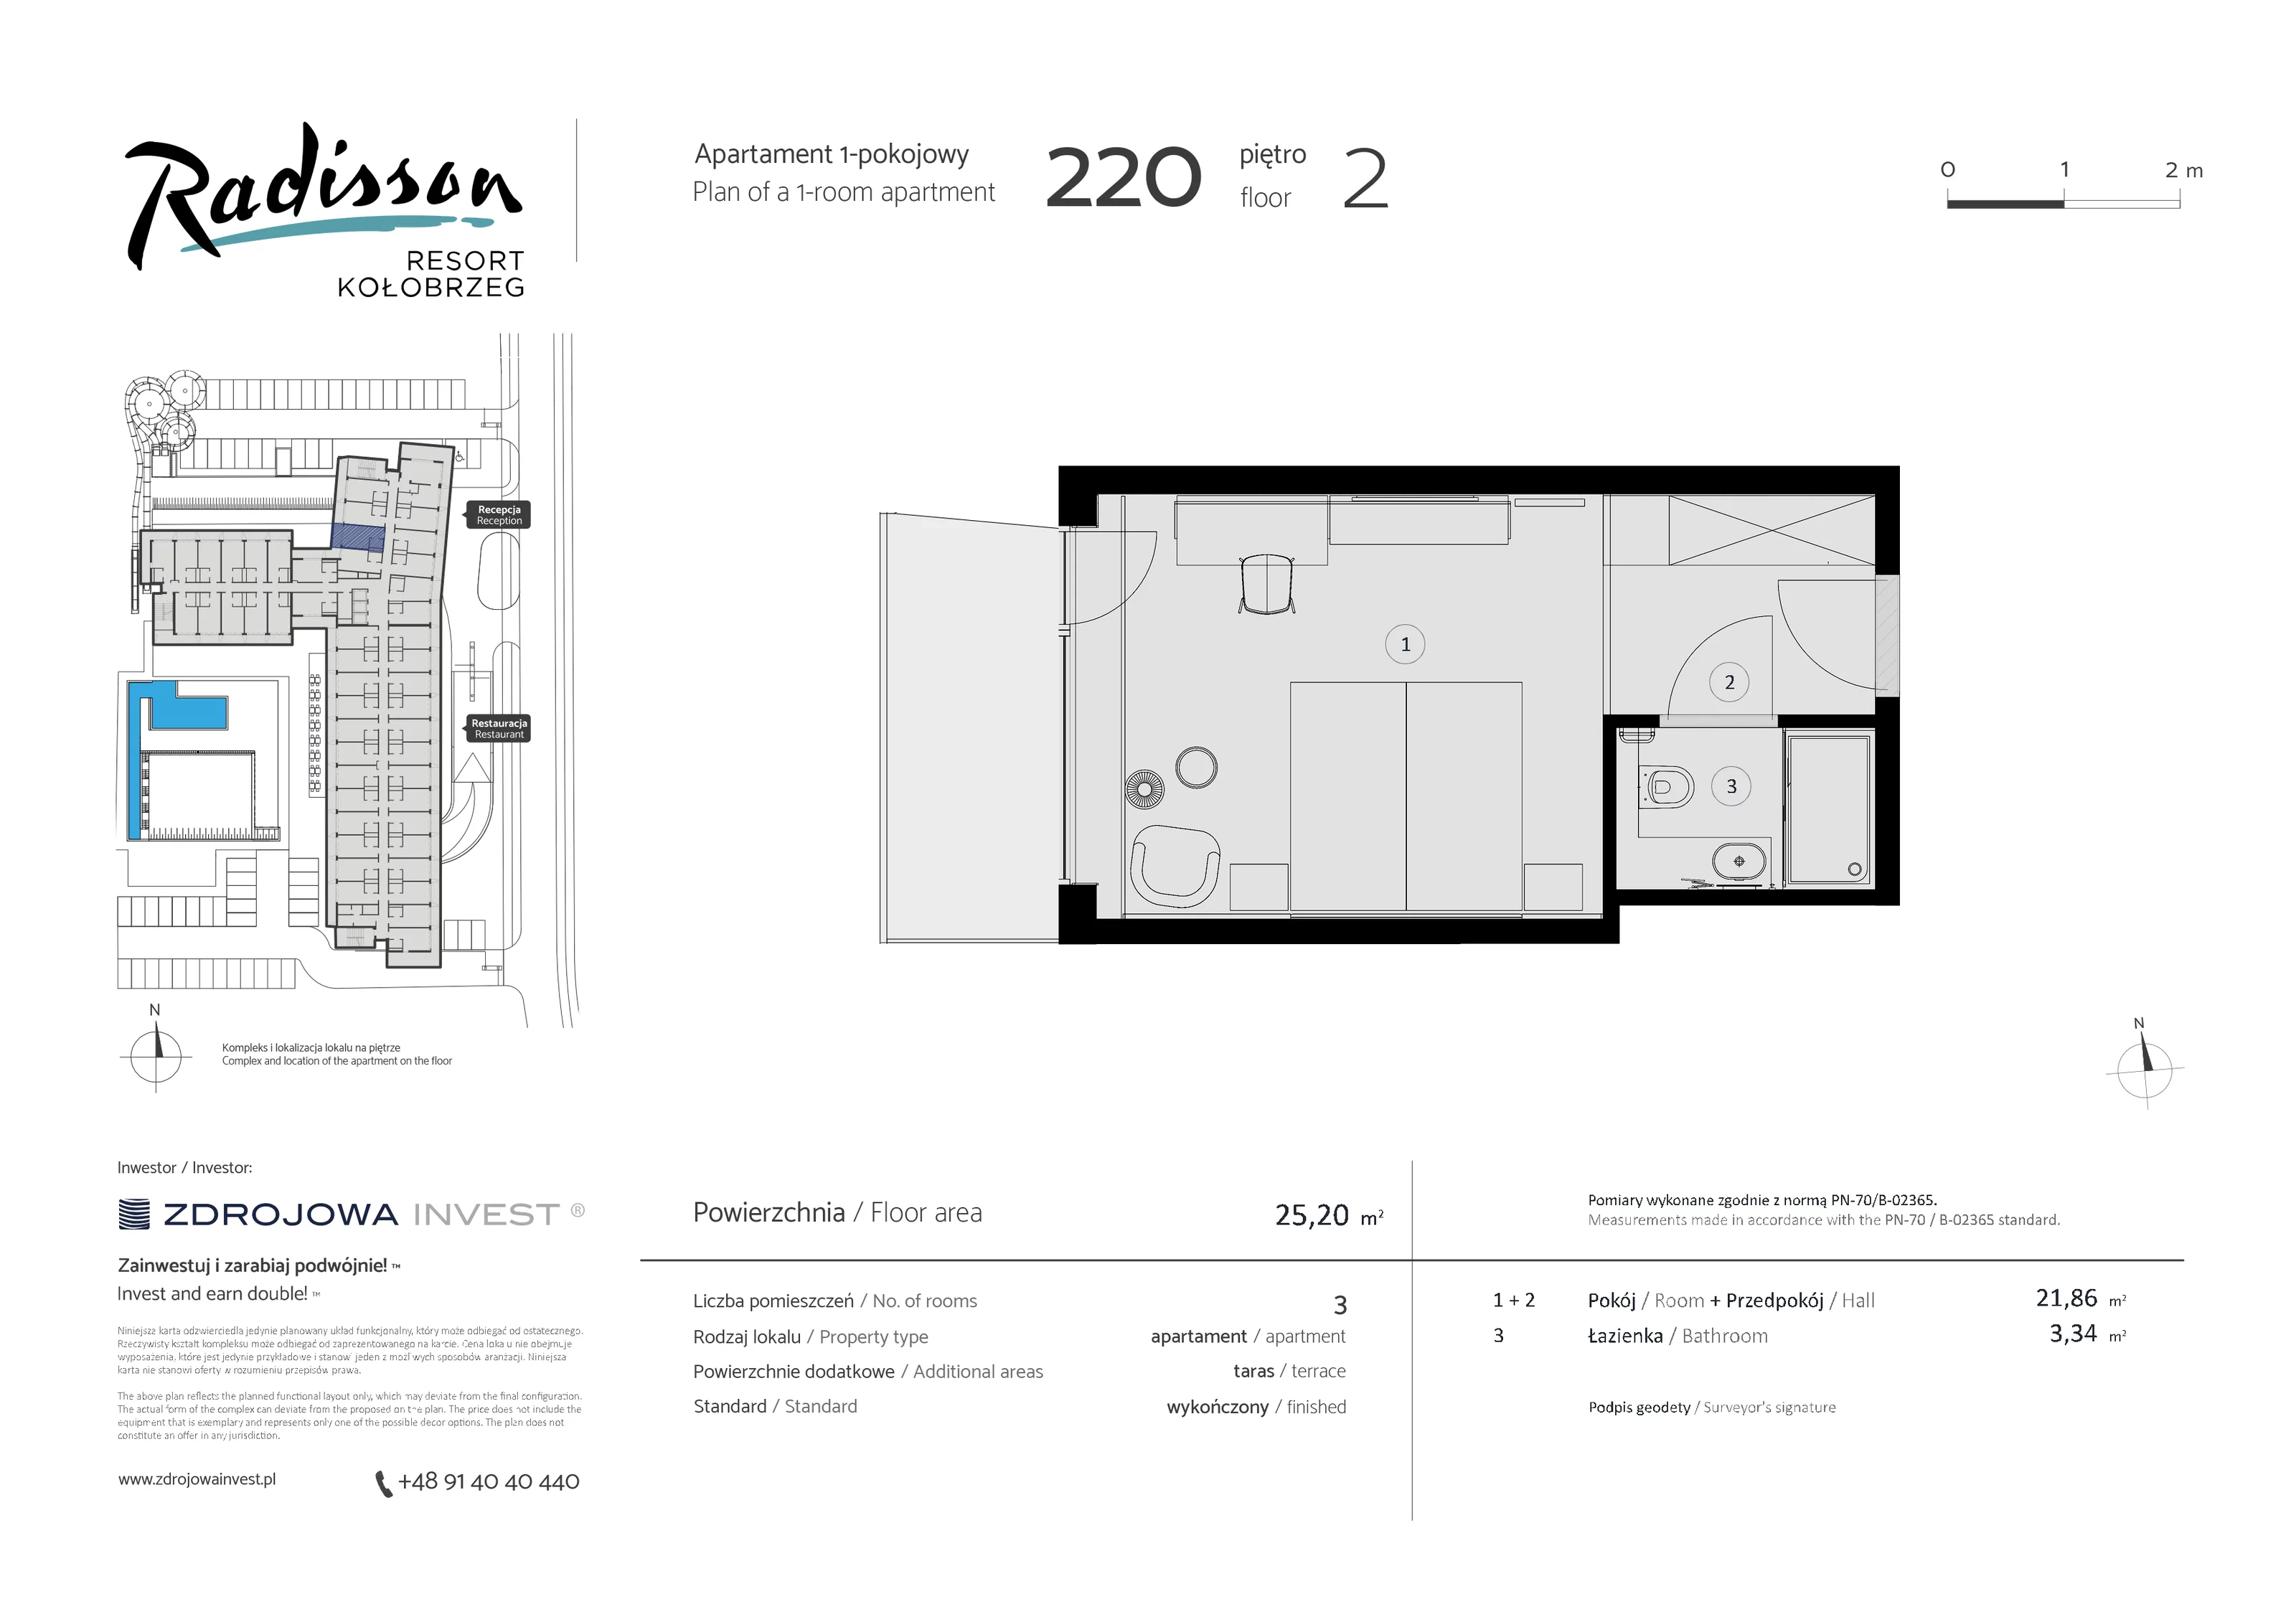 Apartament inwestycyjny 25,20 m², piętro 2, oferta nr 220, Radisson Resort Kołobrzeg, Kołobrzeg, ul. Morawskiego 10